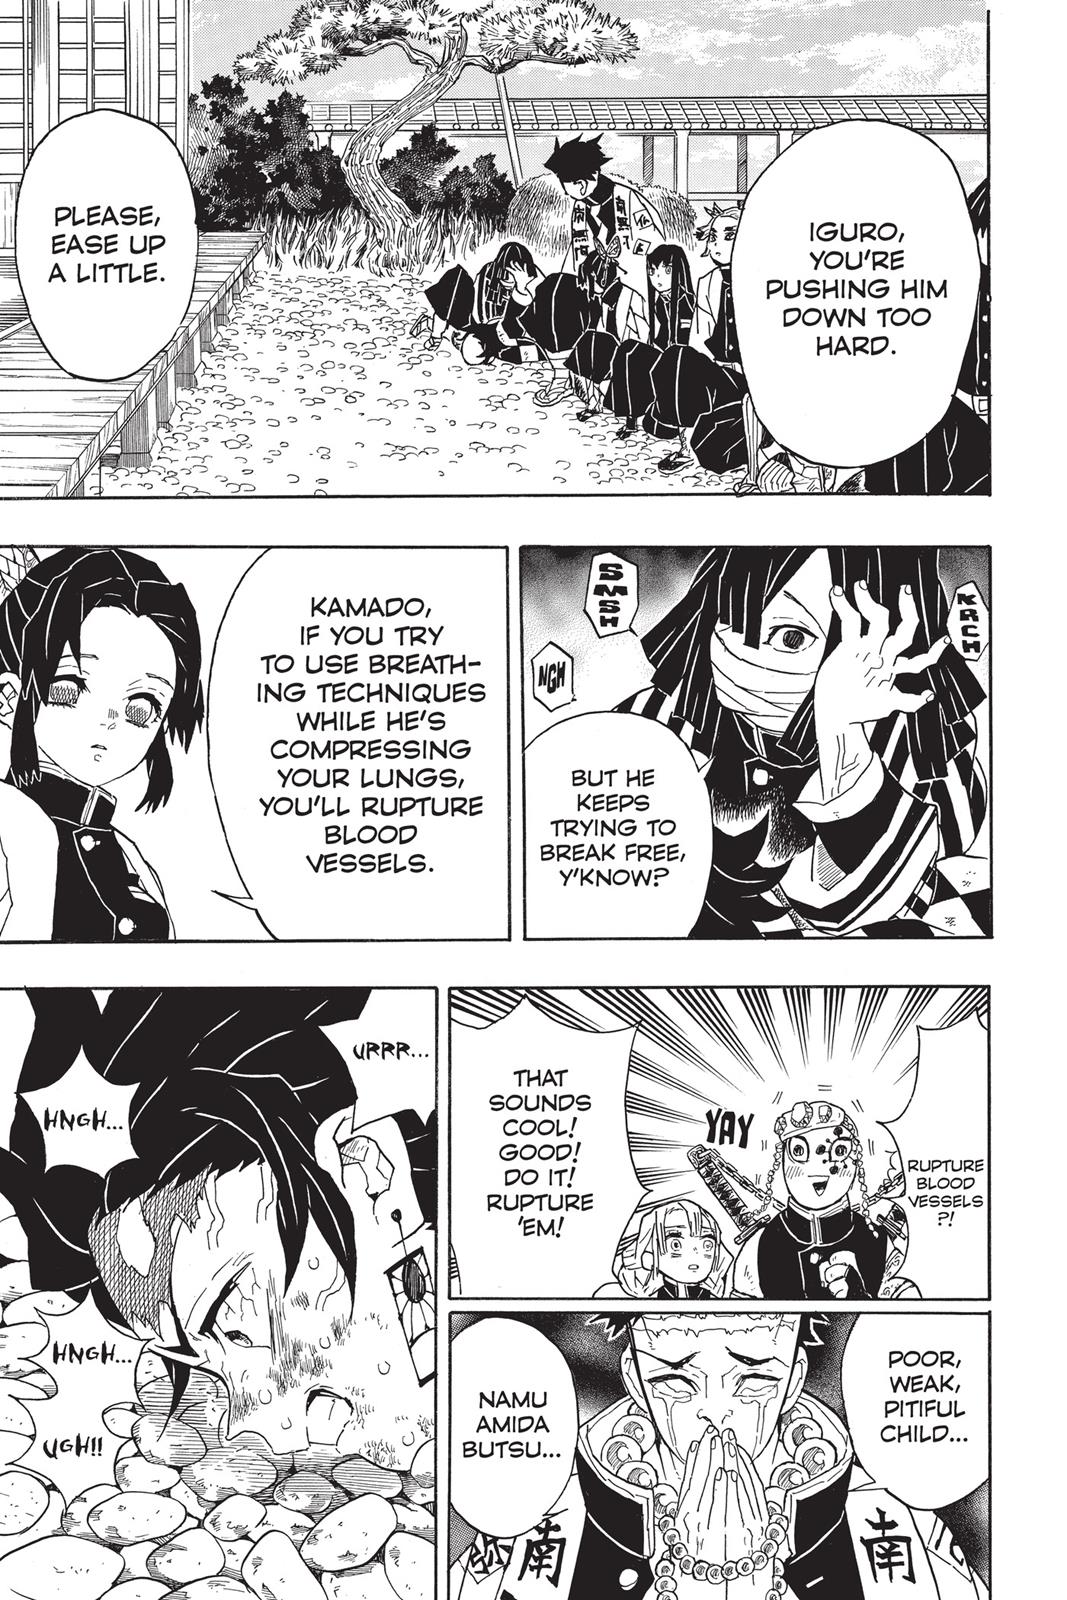 Demon Slayer Manga Manga Chapter - 47 - image 5